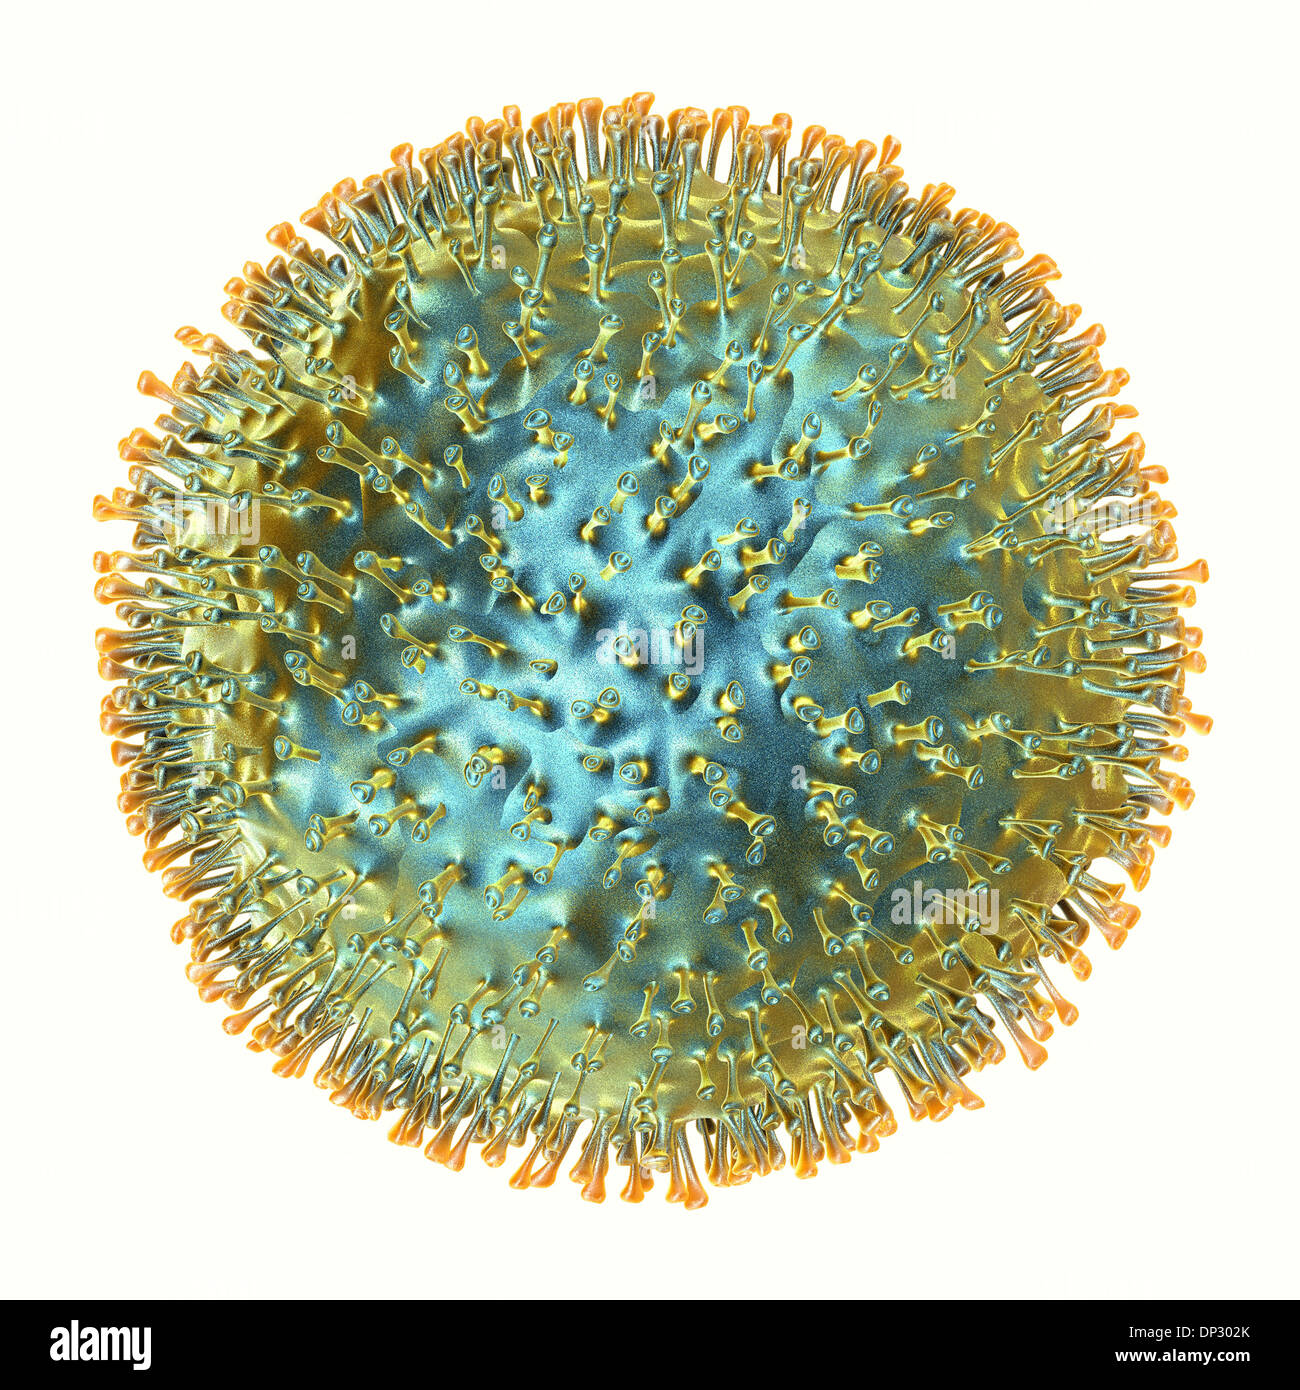 Virus dell'influenza aviaria, artwork Foto Stock